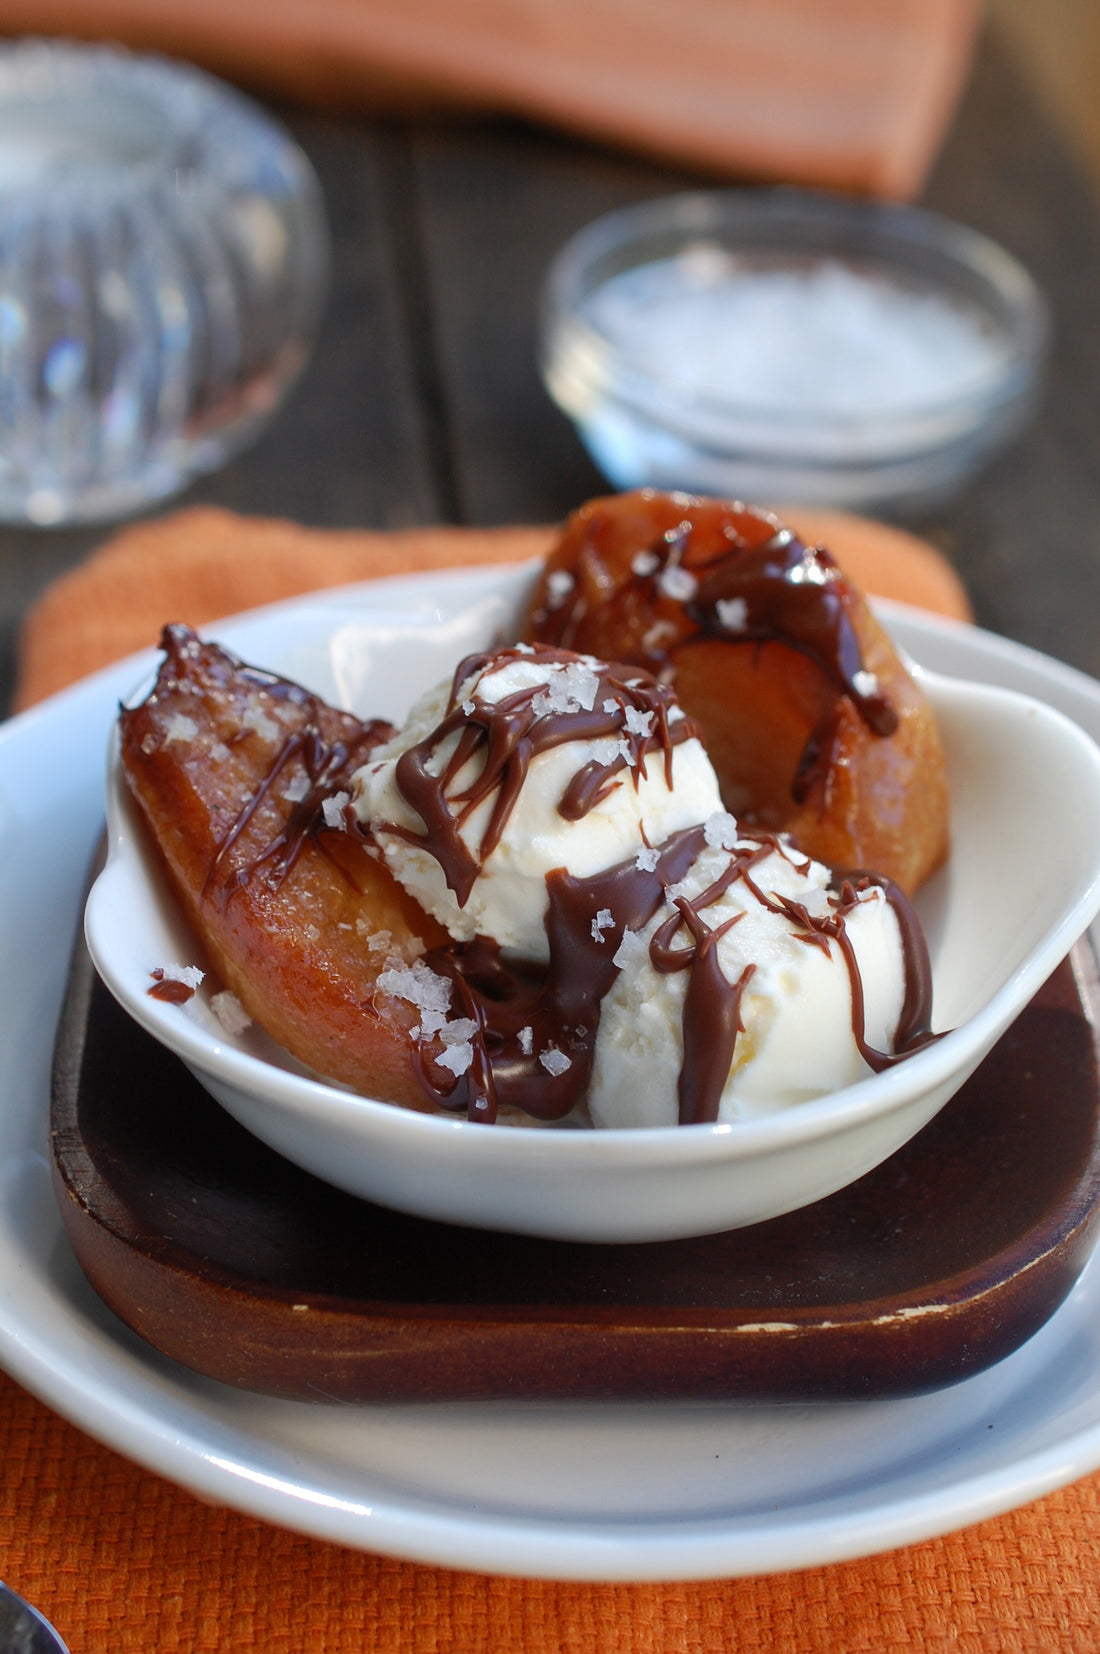 Roasted Pears with Vanilla Ice Cream, Chocolate Sauce & Sea Salt